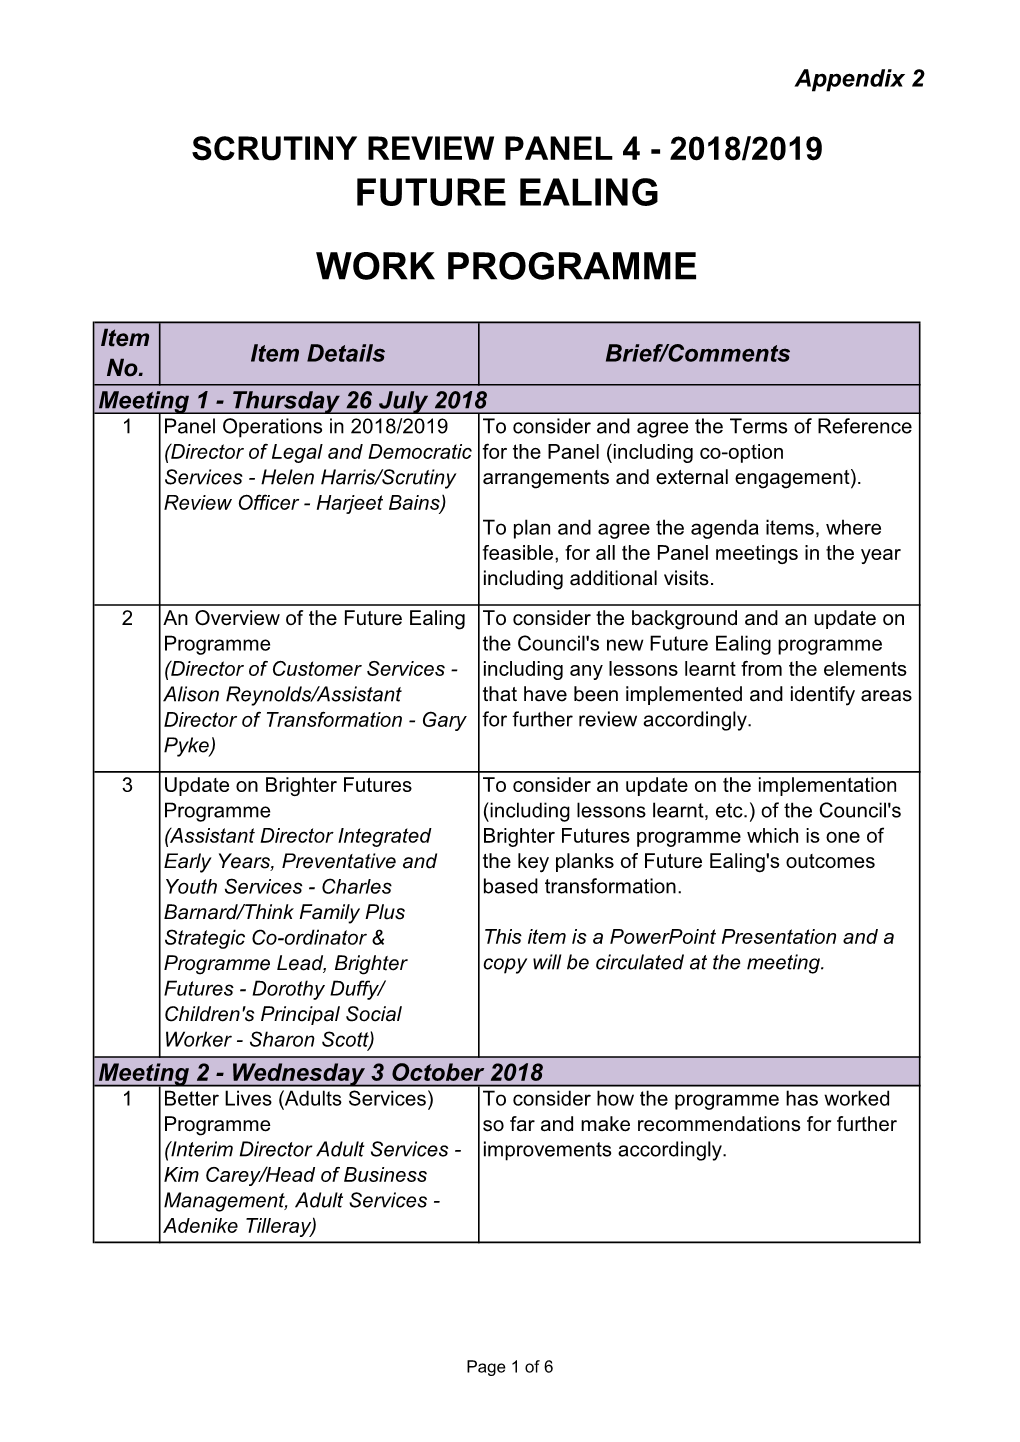 Work Programme Future Ealing